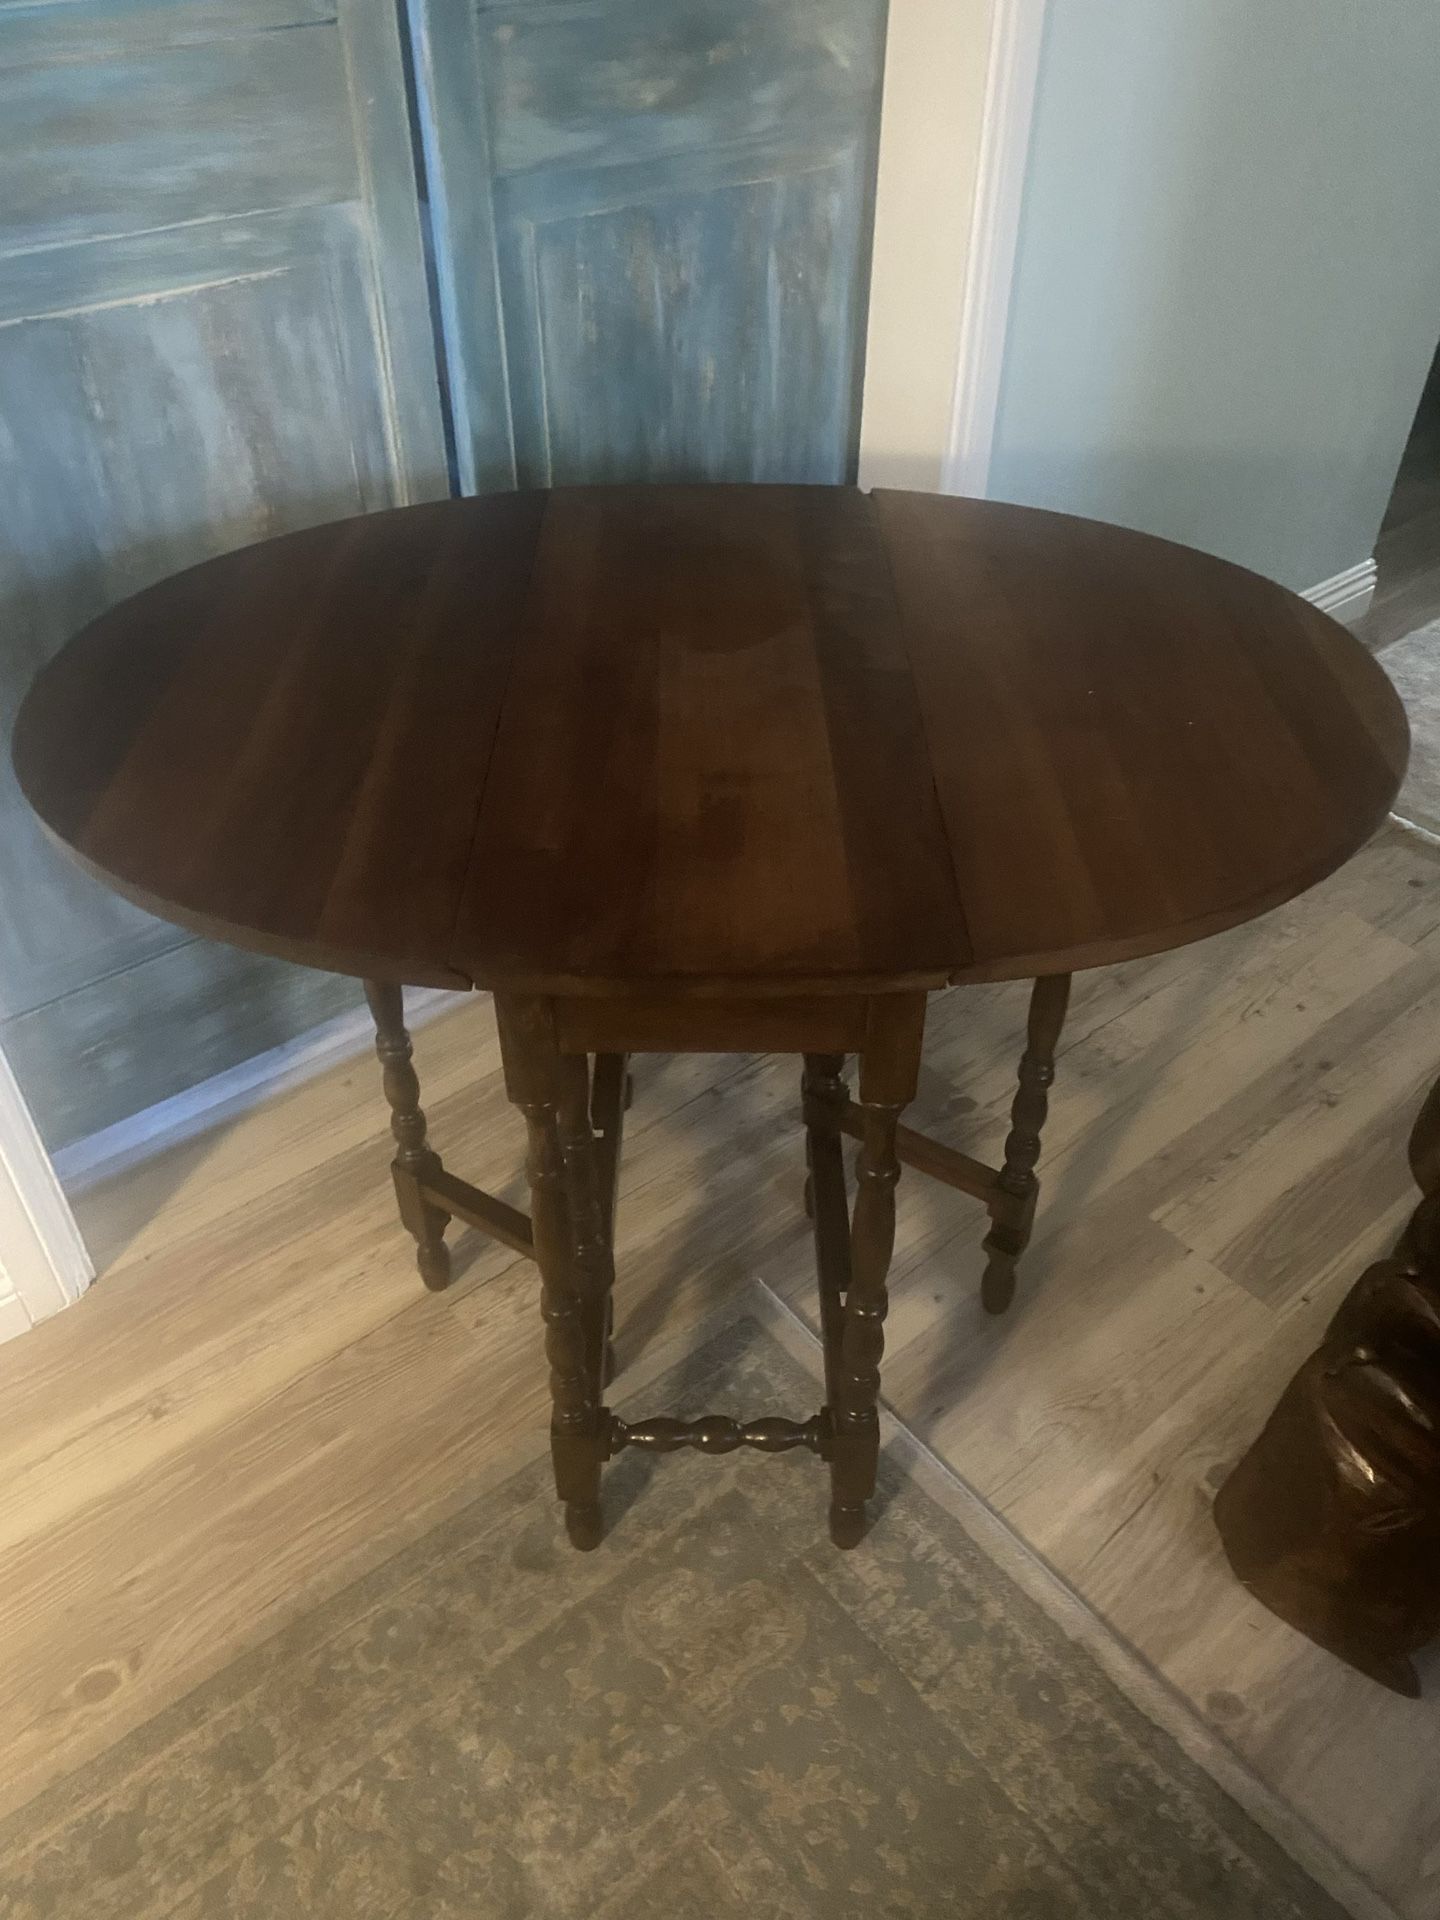  Antique English Oak Drop Leaf Gateleg Oval Table with Barley Twist Legs 